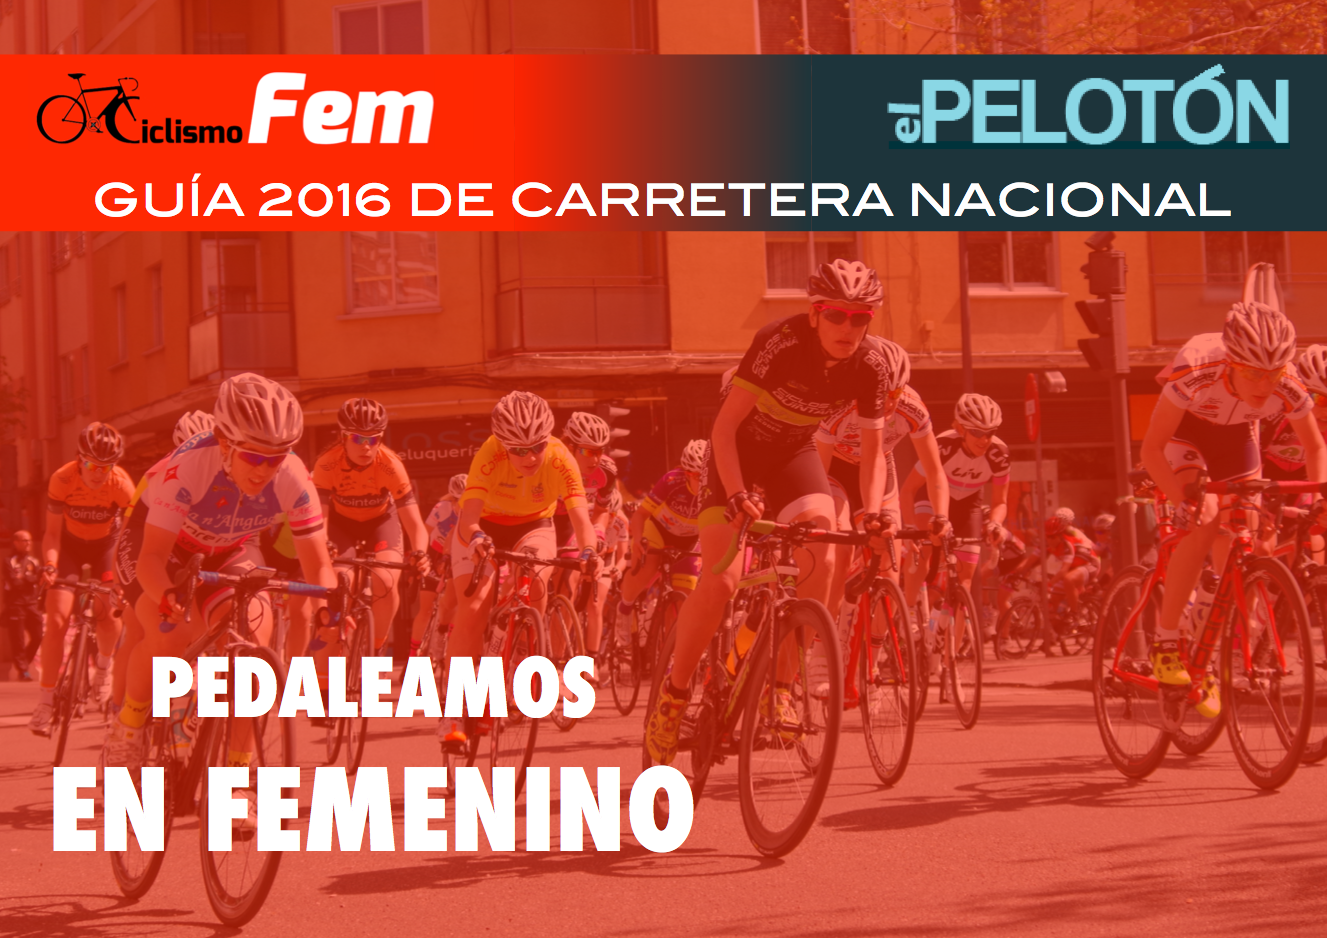 Guía CiclismoFem-El Pelotón 2016